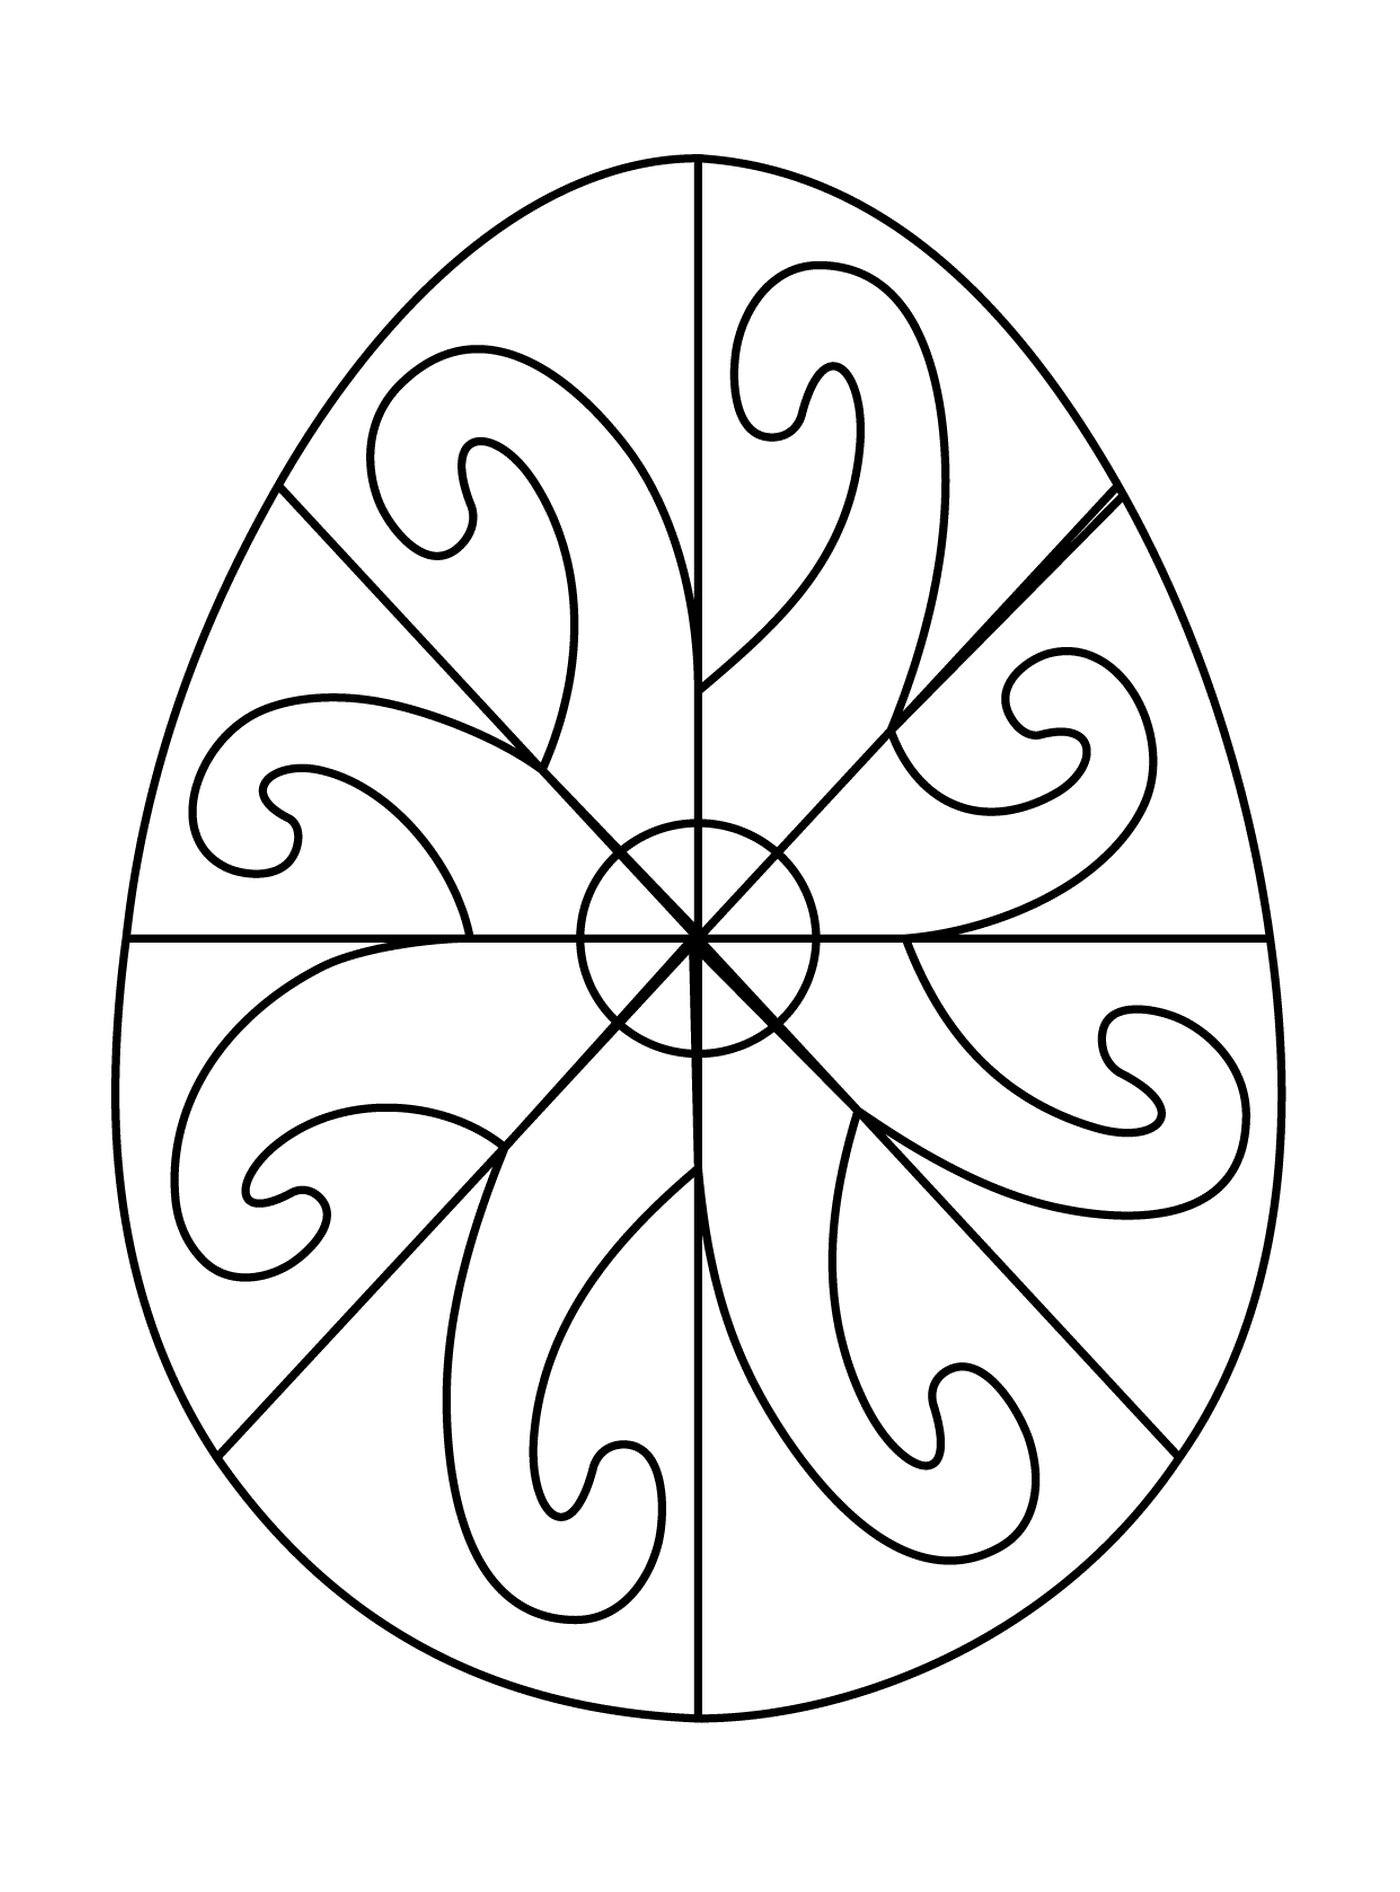   Oeuf de Pâques avec un motif en spirale 